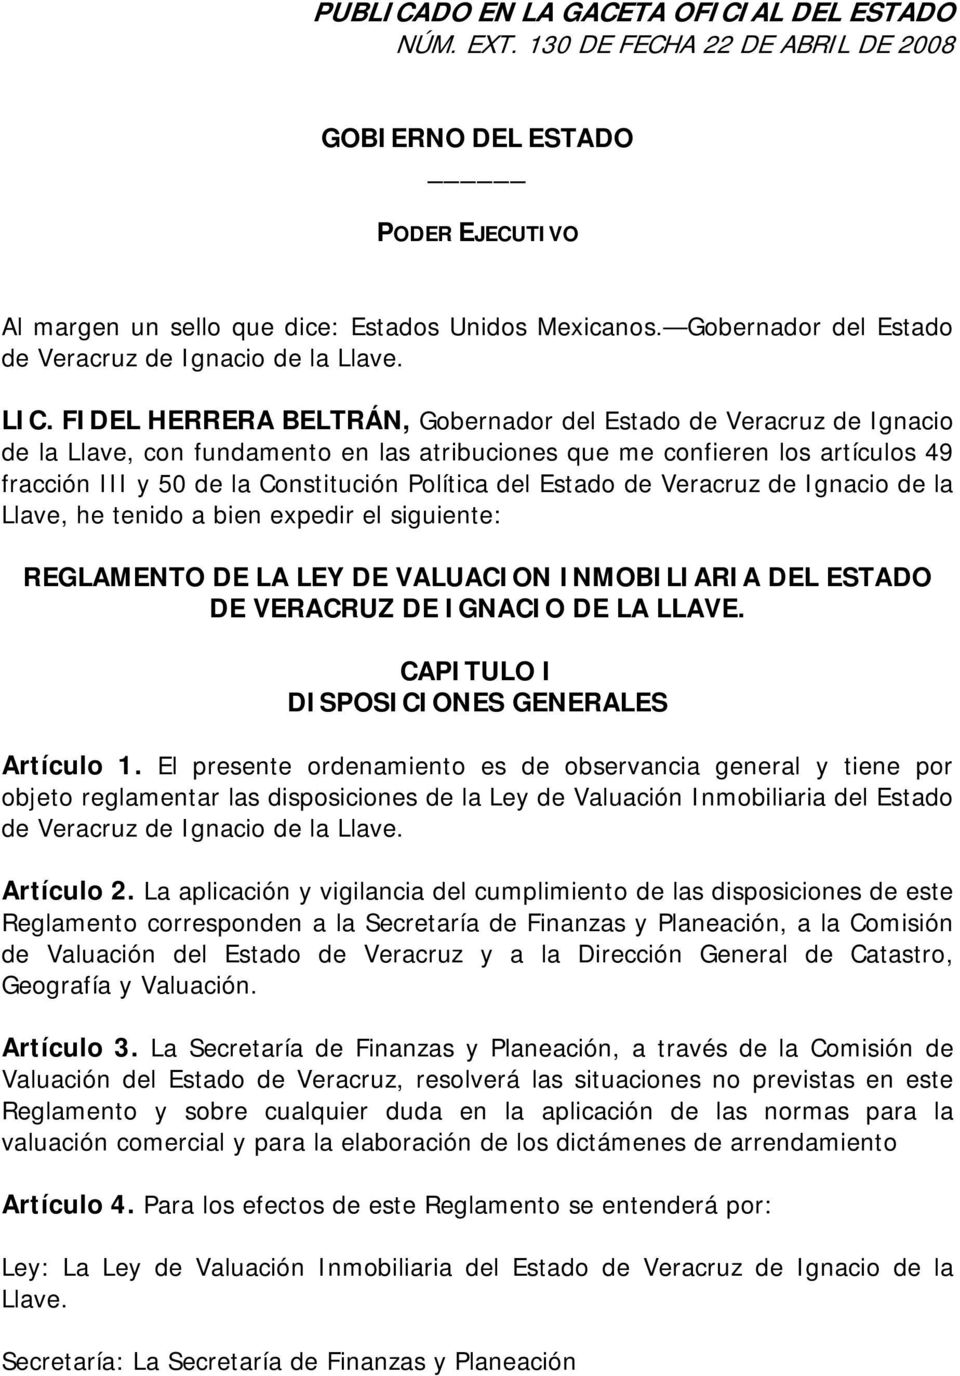 FIDEL HERRERA BELTRÁN, Gobernador del Estado de Veracruz de Ignacio de la Llave, con fundamento en las atribuciones que me confieren los artículos 49 fracción III y 50 de la Constitución Política del